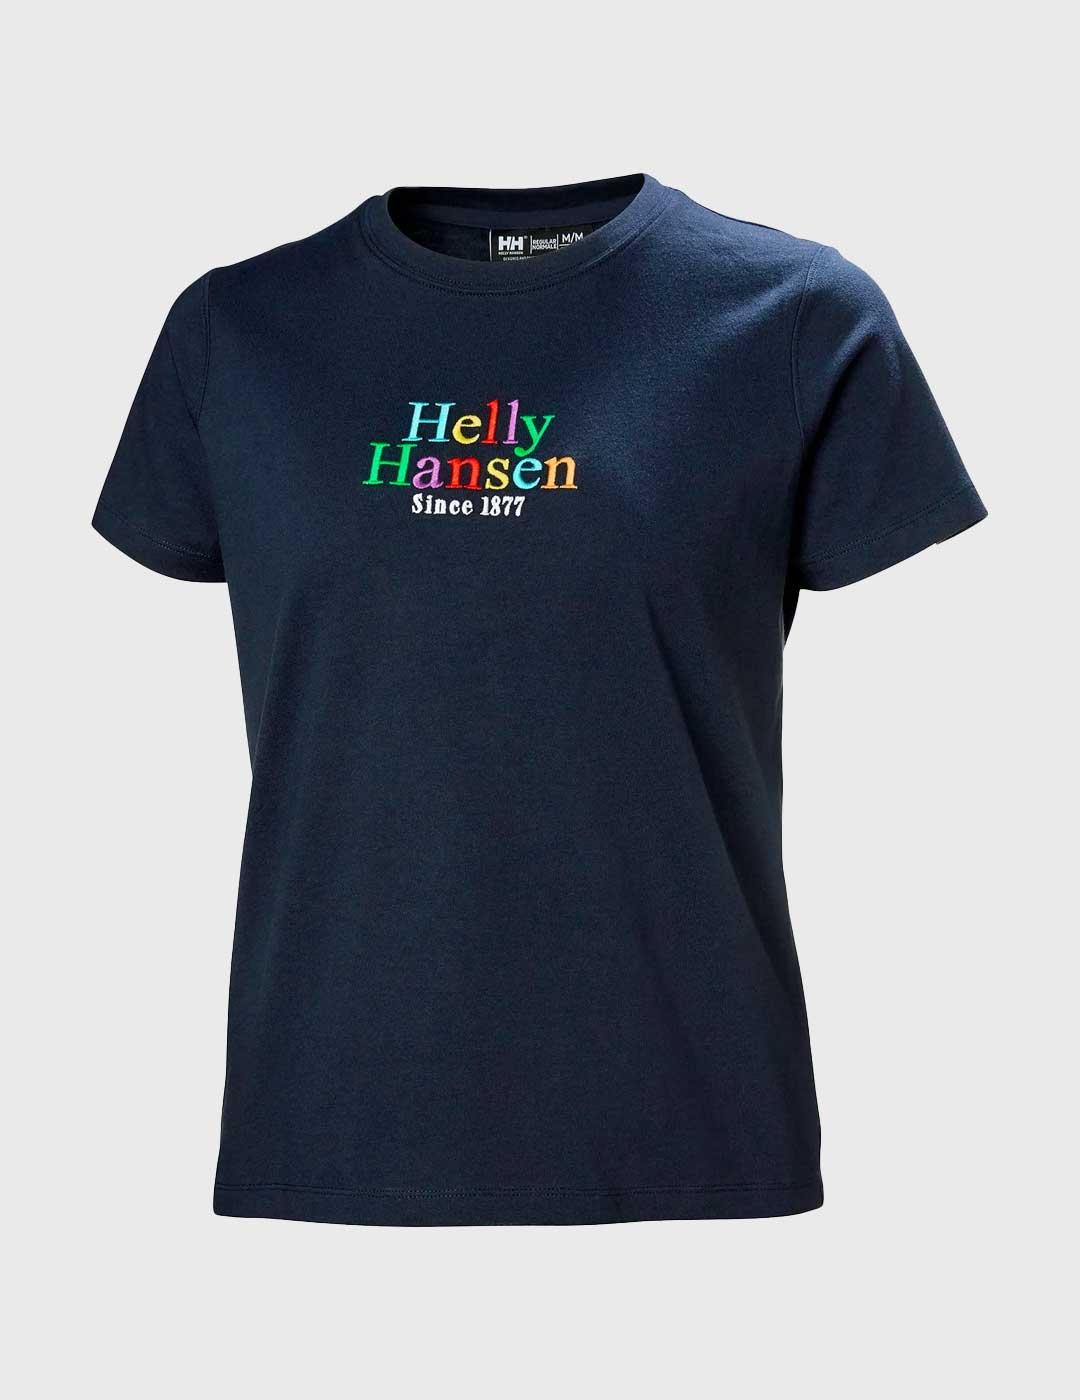 Camiseta Helly Hansen Core Graphic marino para mujer